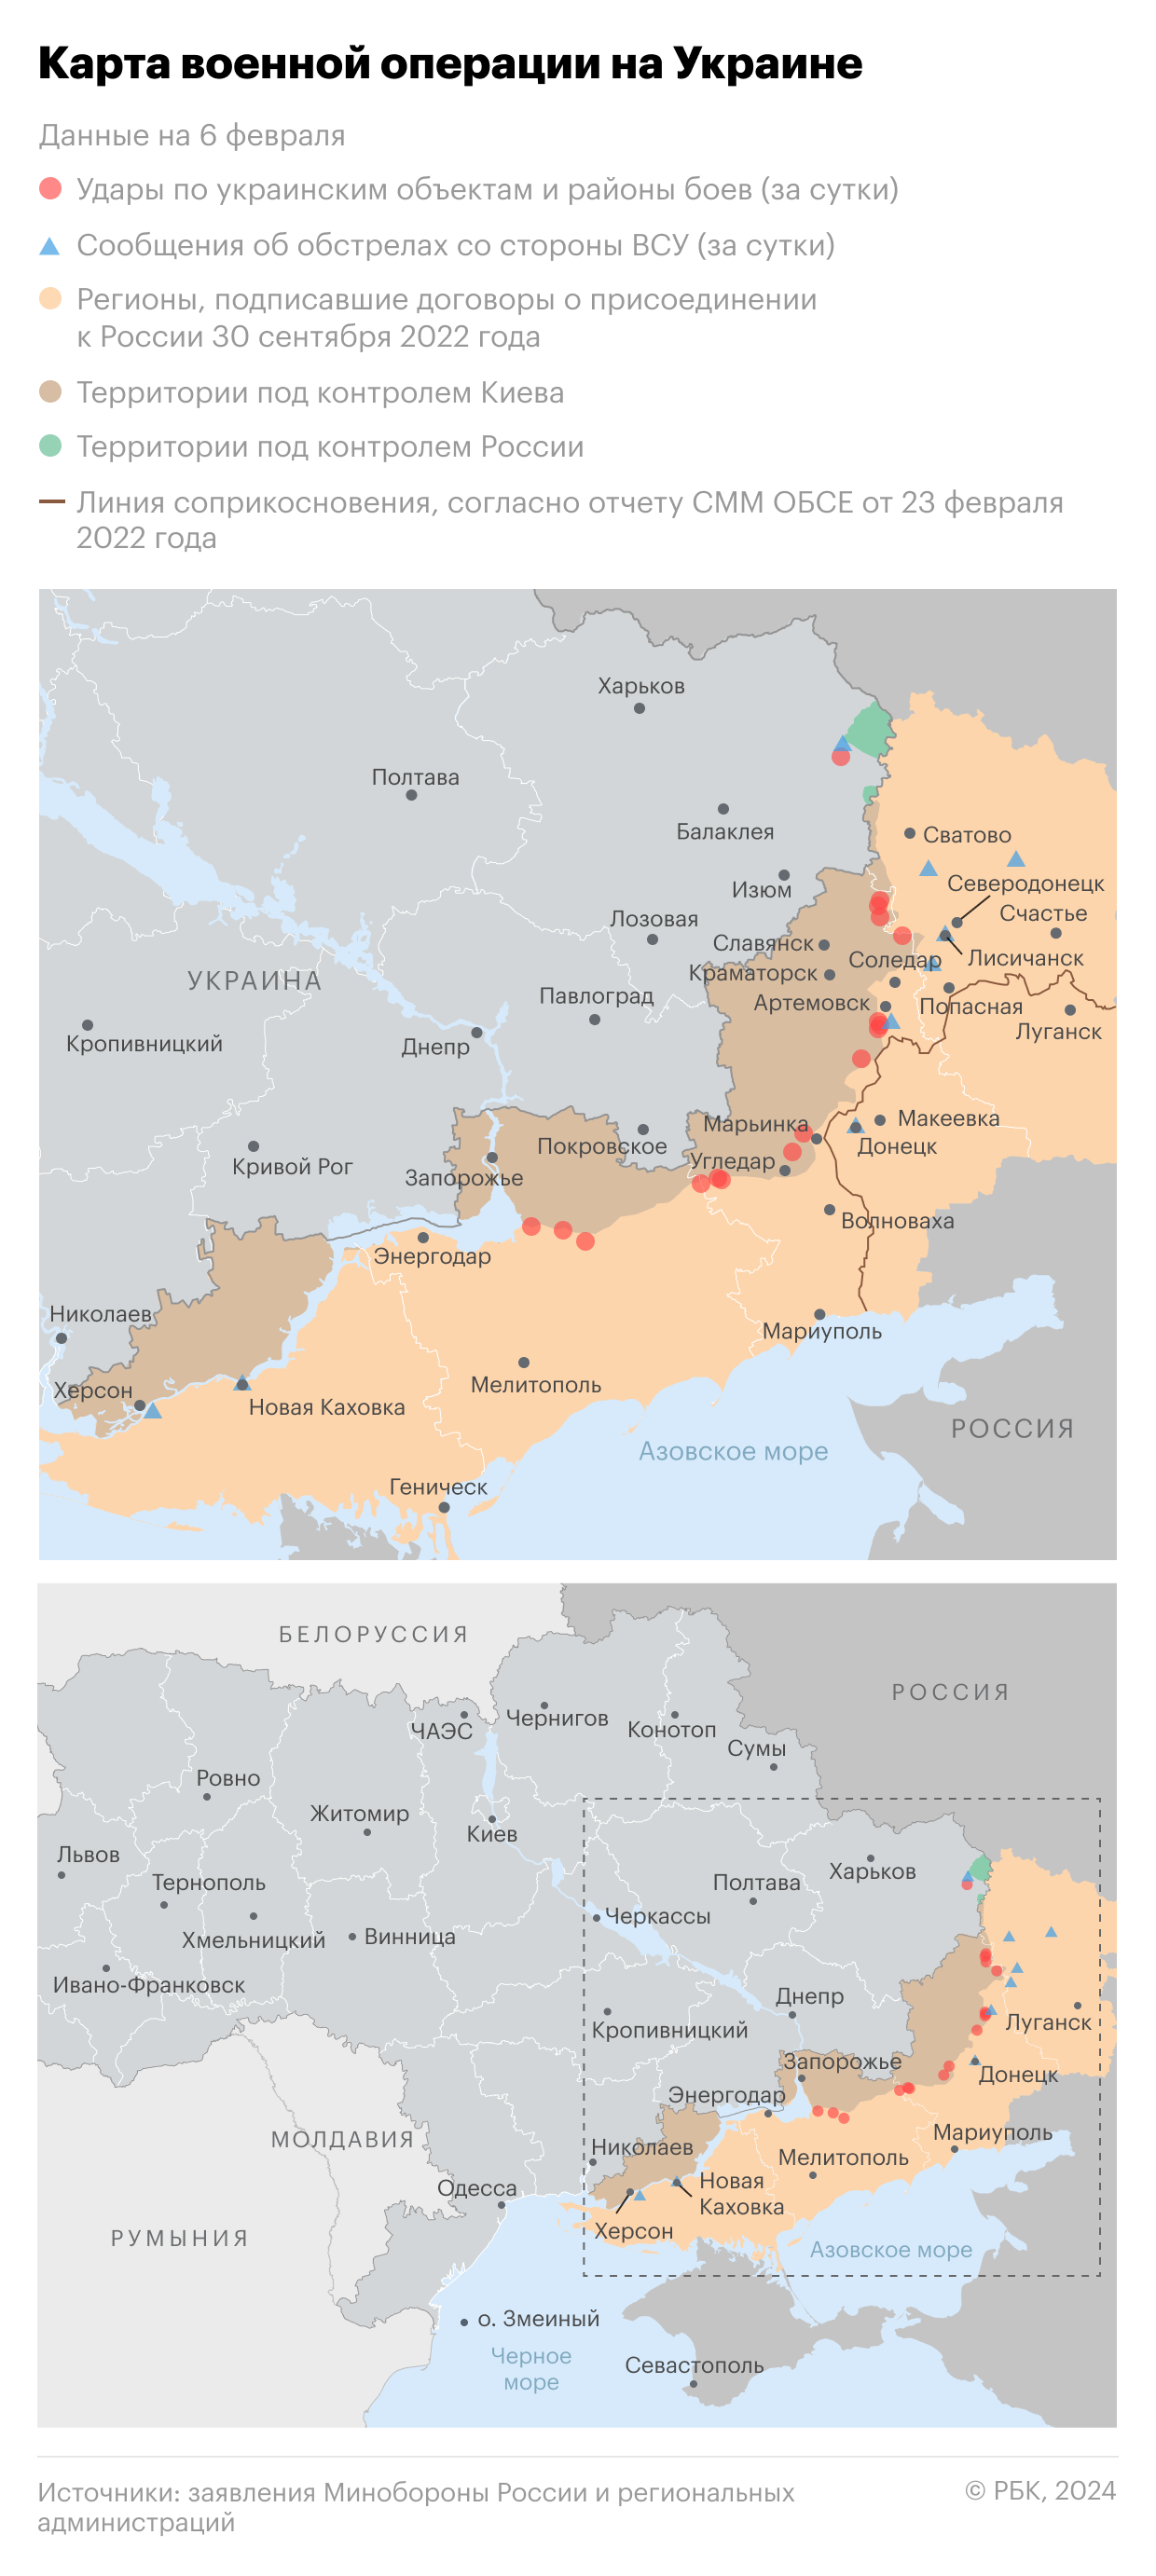 Военная операция на Украине. Карта на 6 февраля"/>













